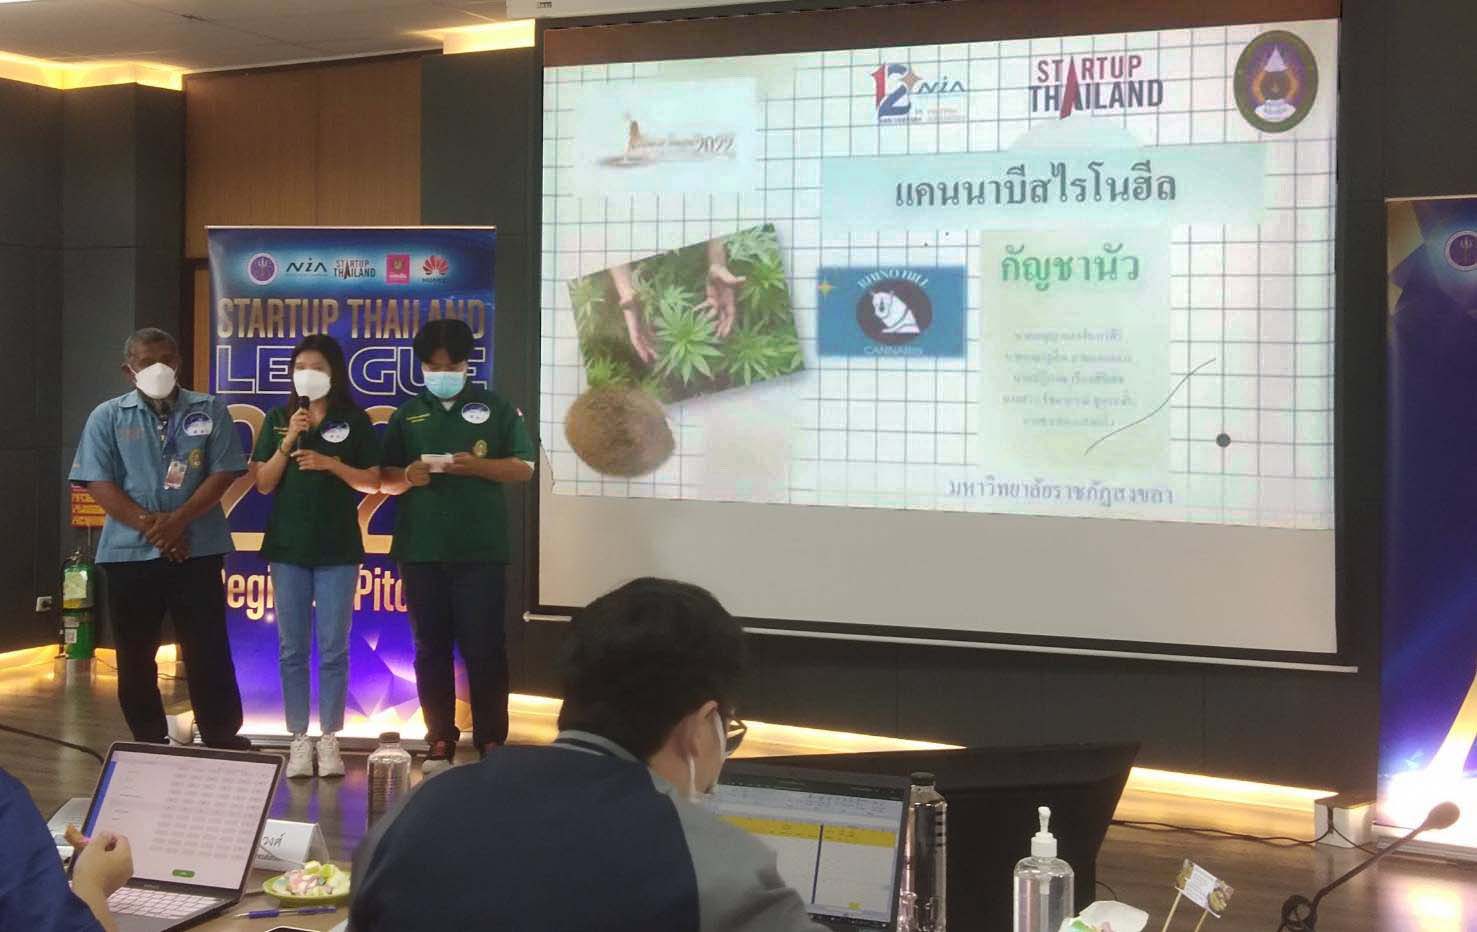 นศ. มรภ.สงขลา ร่วมแข่งขันนำเสนอแผนธุรกิจ “Startup Thailand League” รอบคัดเลือกภาคใต้